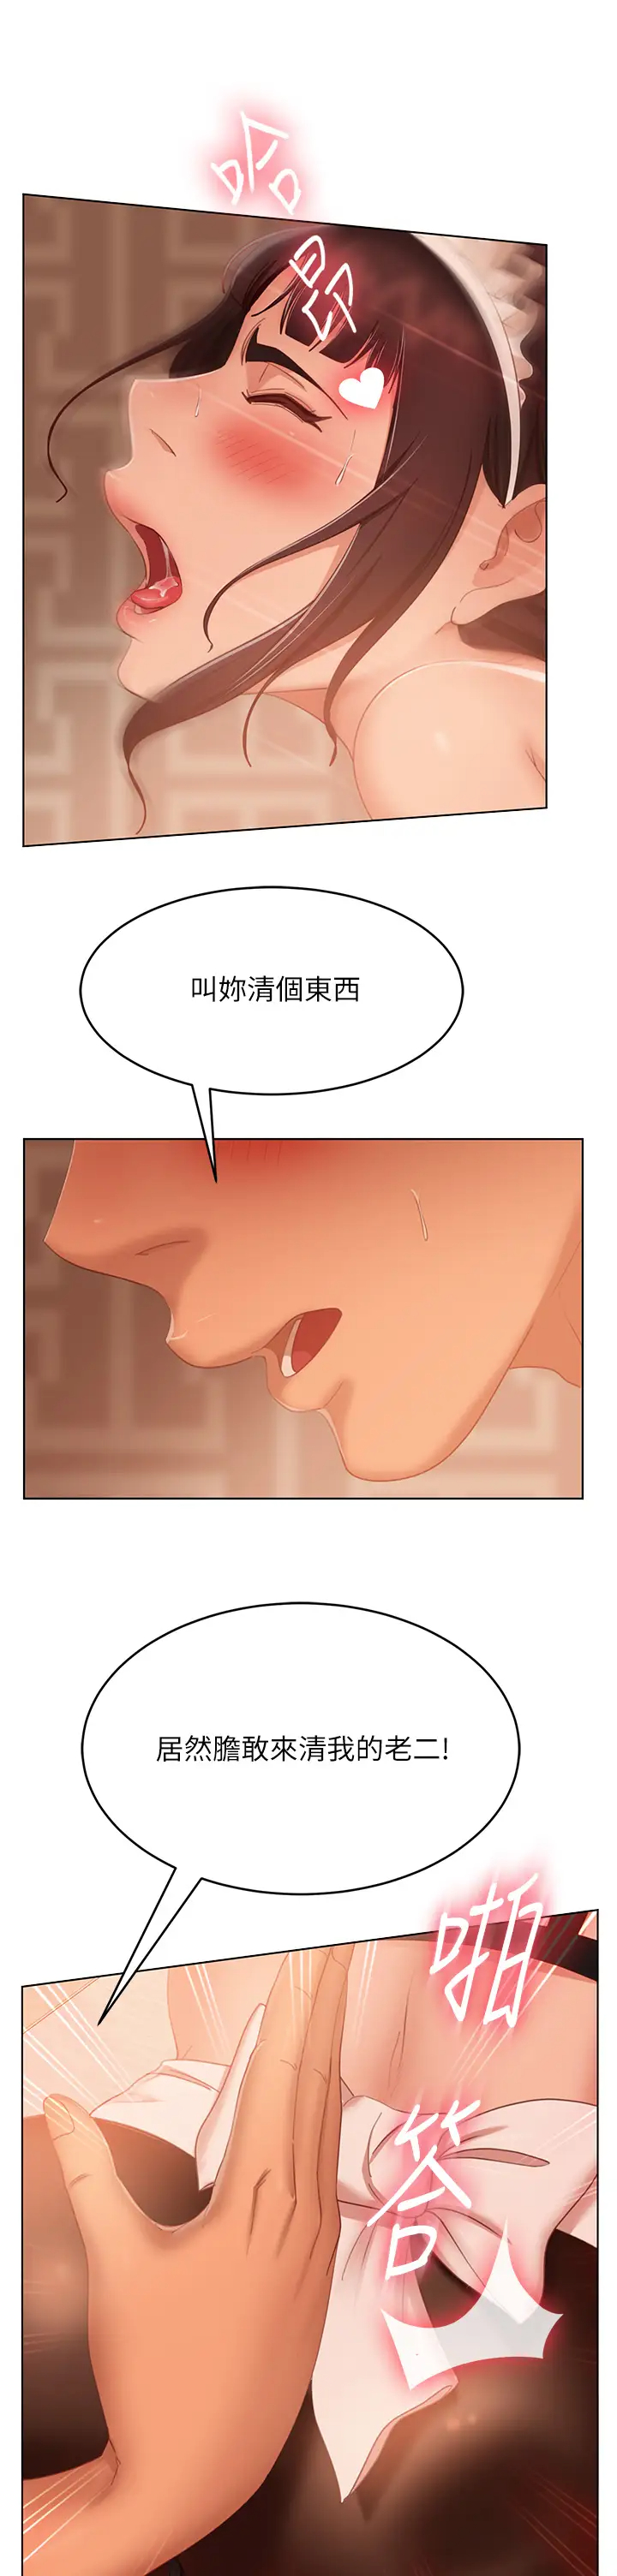 韩国污漫画 不良女房客 第63话投入在主仆游戏里的两人 19